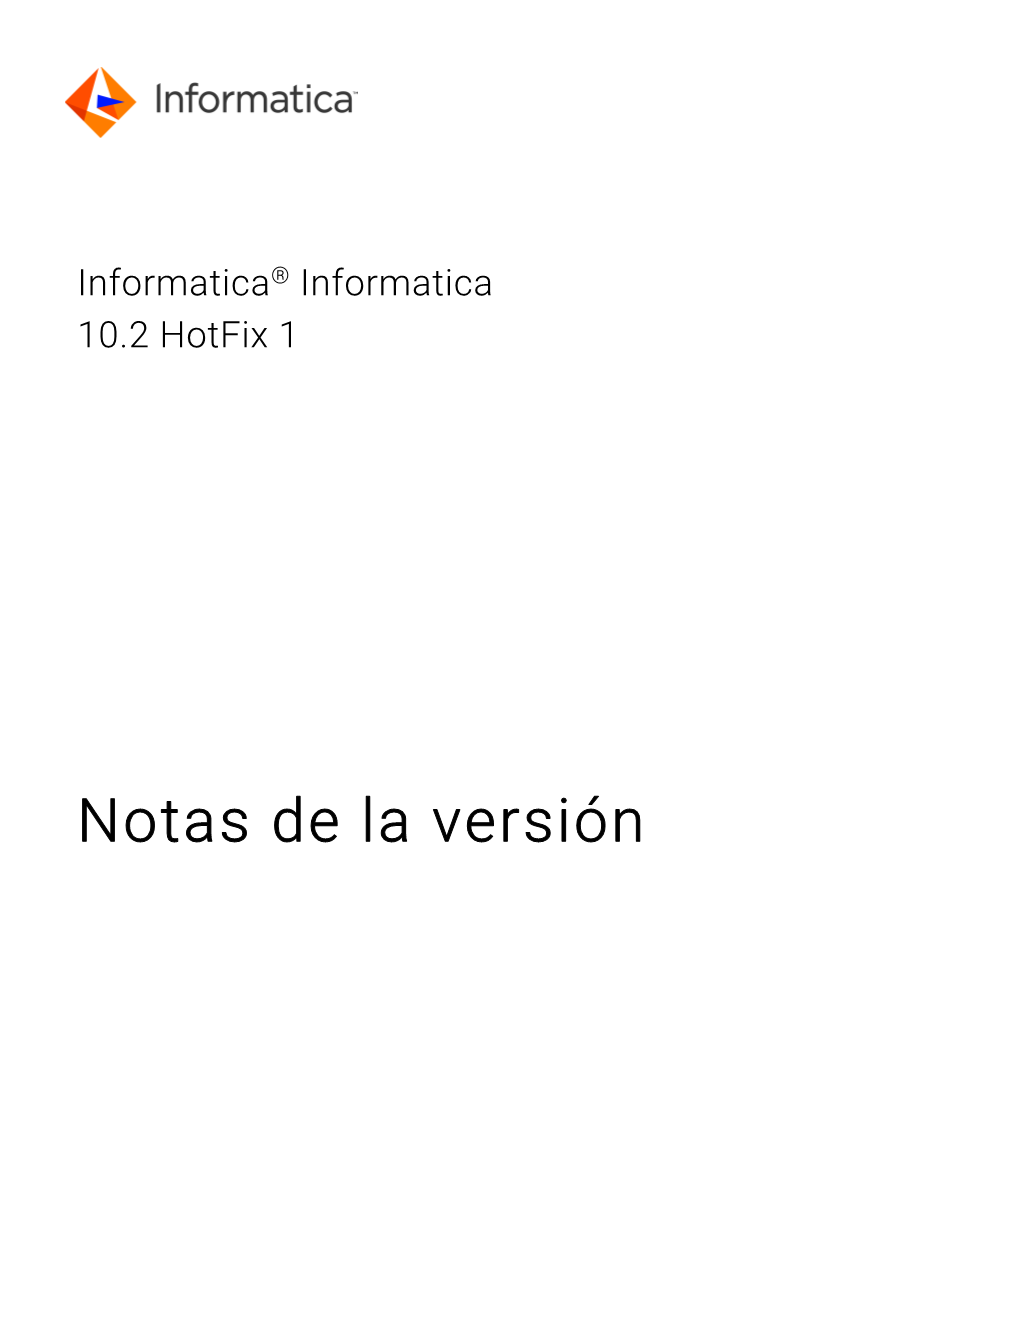 Informatica® Informatica 10.2 Hotfix 1